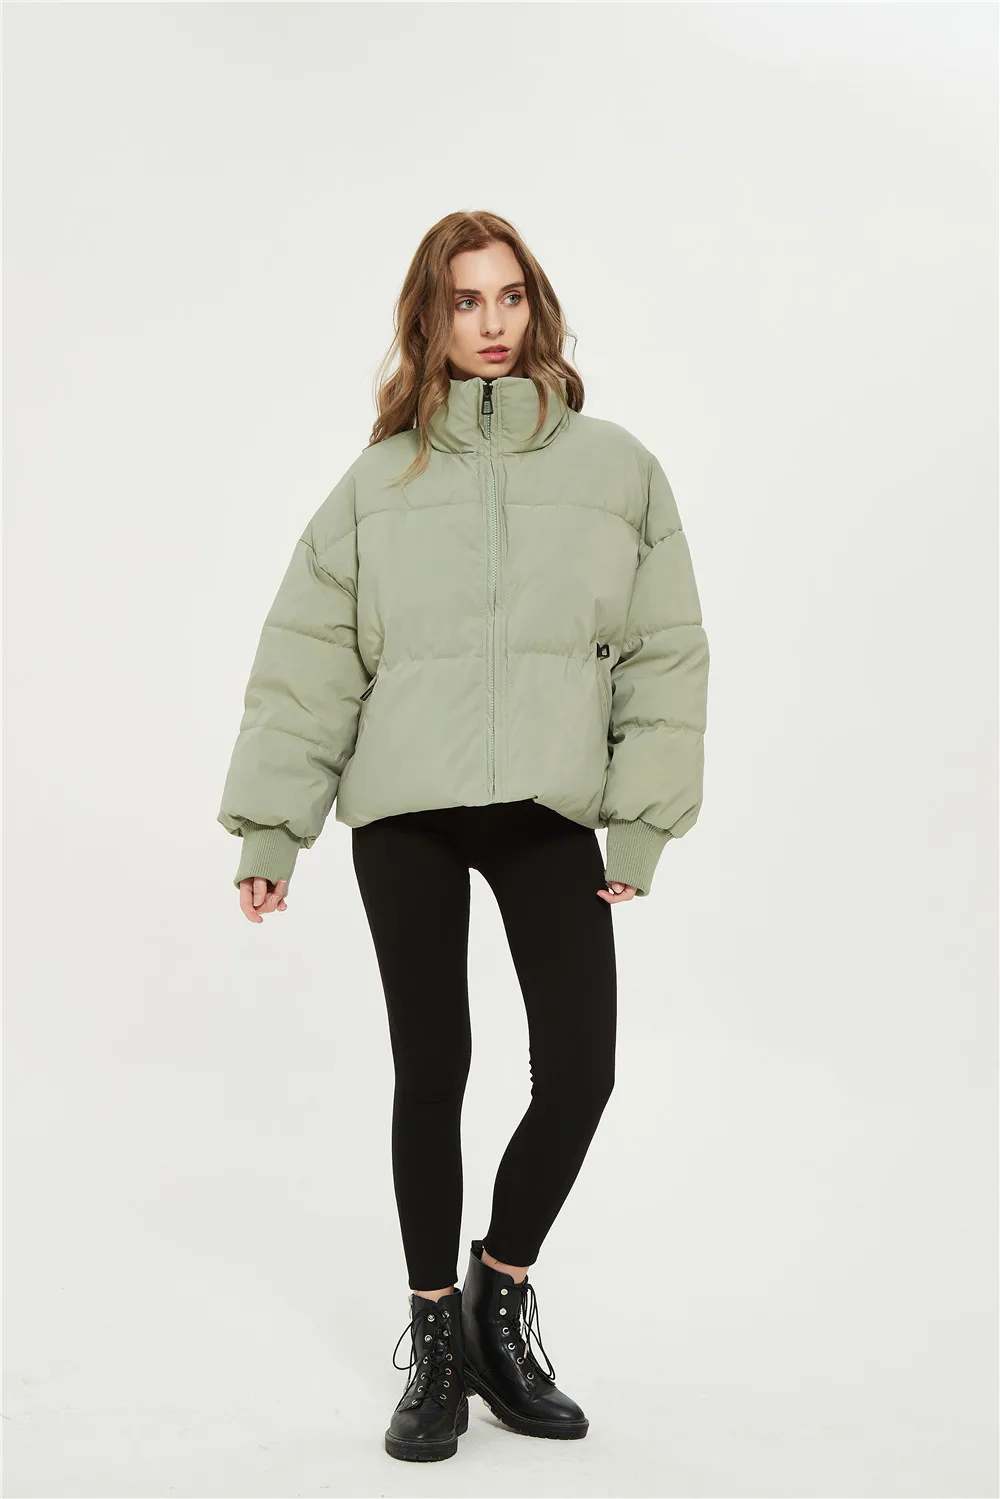 KONDALA Autumn Winter Za Women Jackets Thicken Streetwear Oversized Parkas Long Batwing Sleeve Pockets Female Coats Mujer Tops